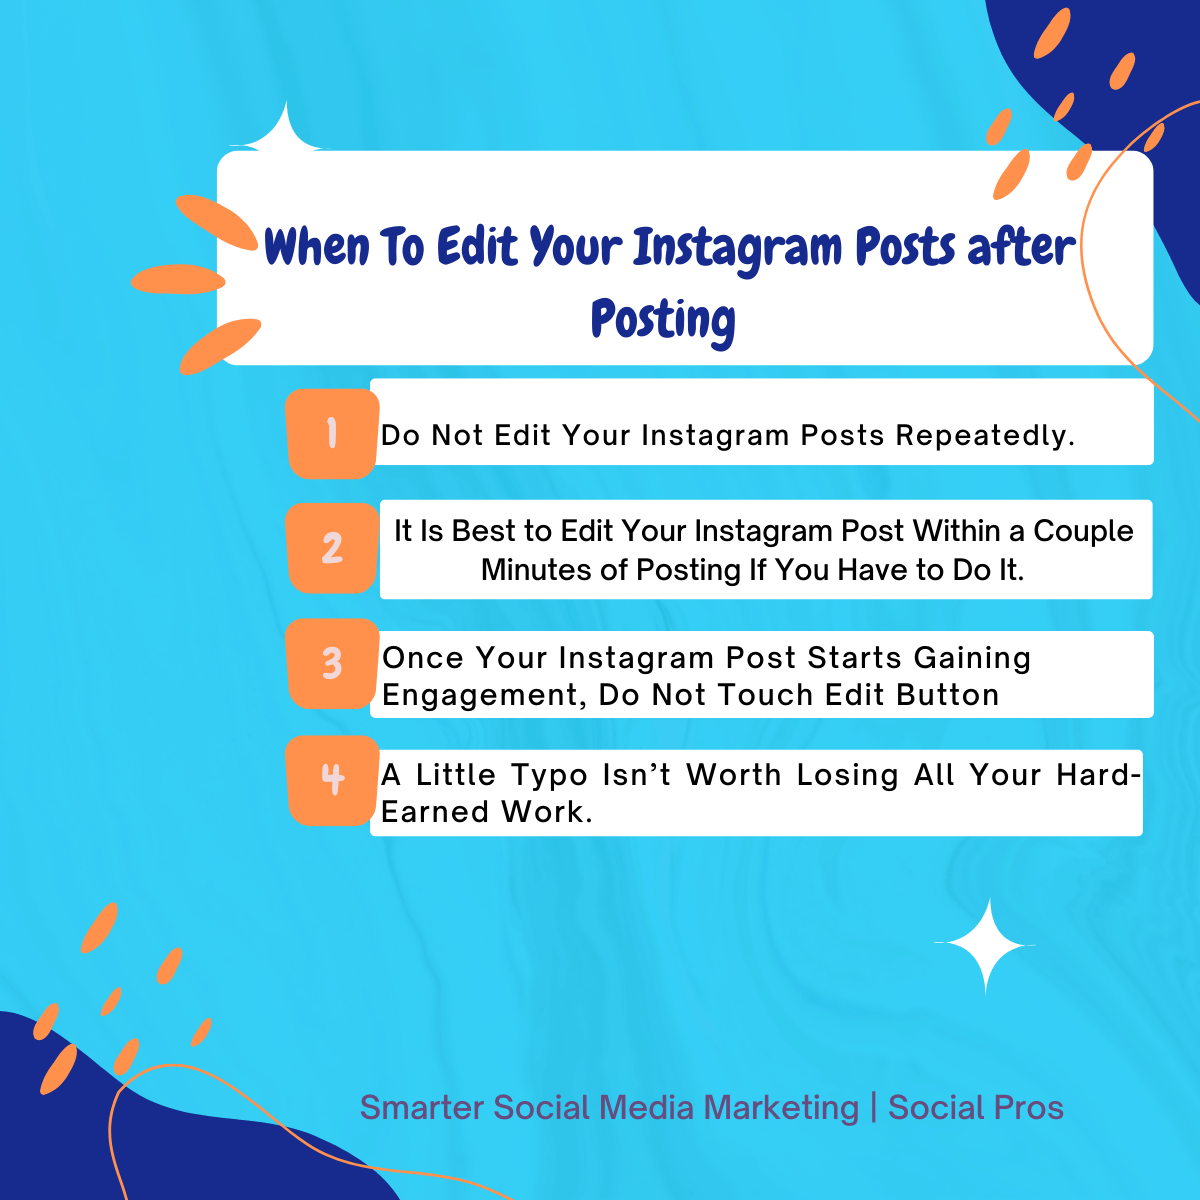 Do Not Edit Your Instagram Posts. 